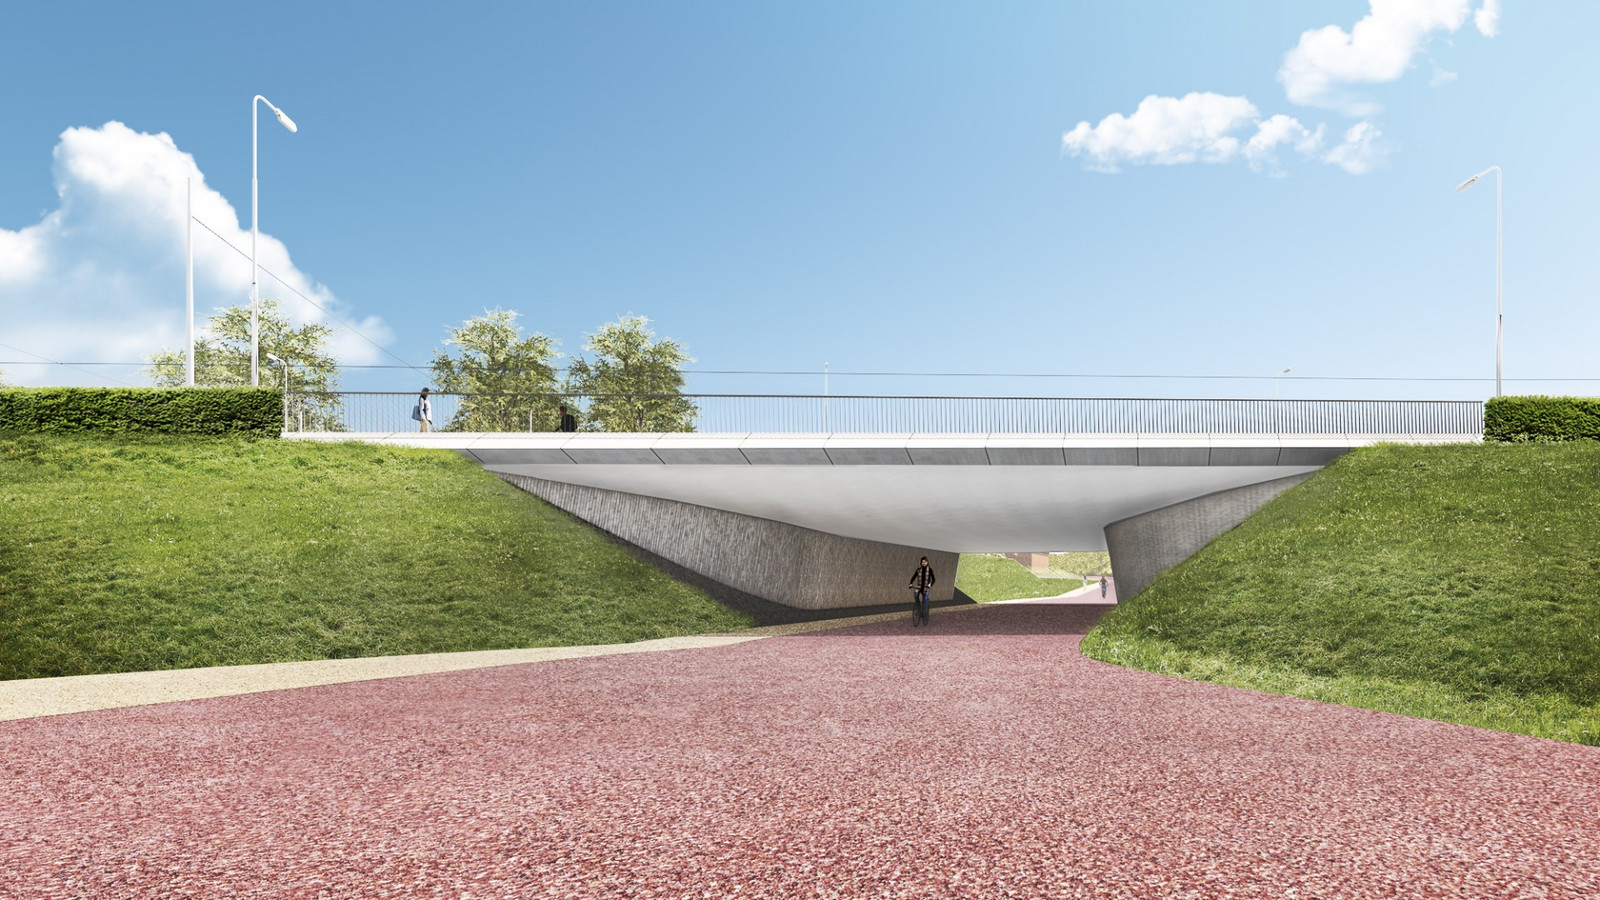 Om fietsers een veilige passage van de Turnhoutsebaan te garanderen tijdens de werken aan de Oosterweelverbinding, zal Lantis een nieuwe fietstunnel bouwen onder deze drukke gewestweg.